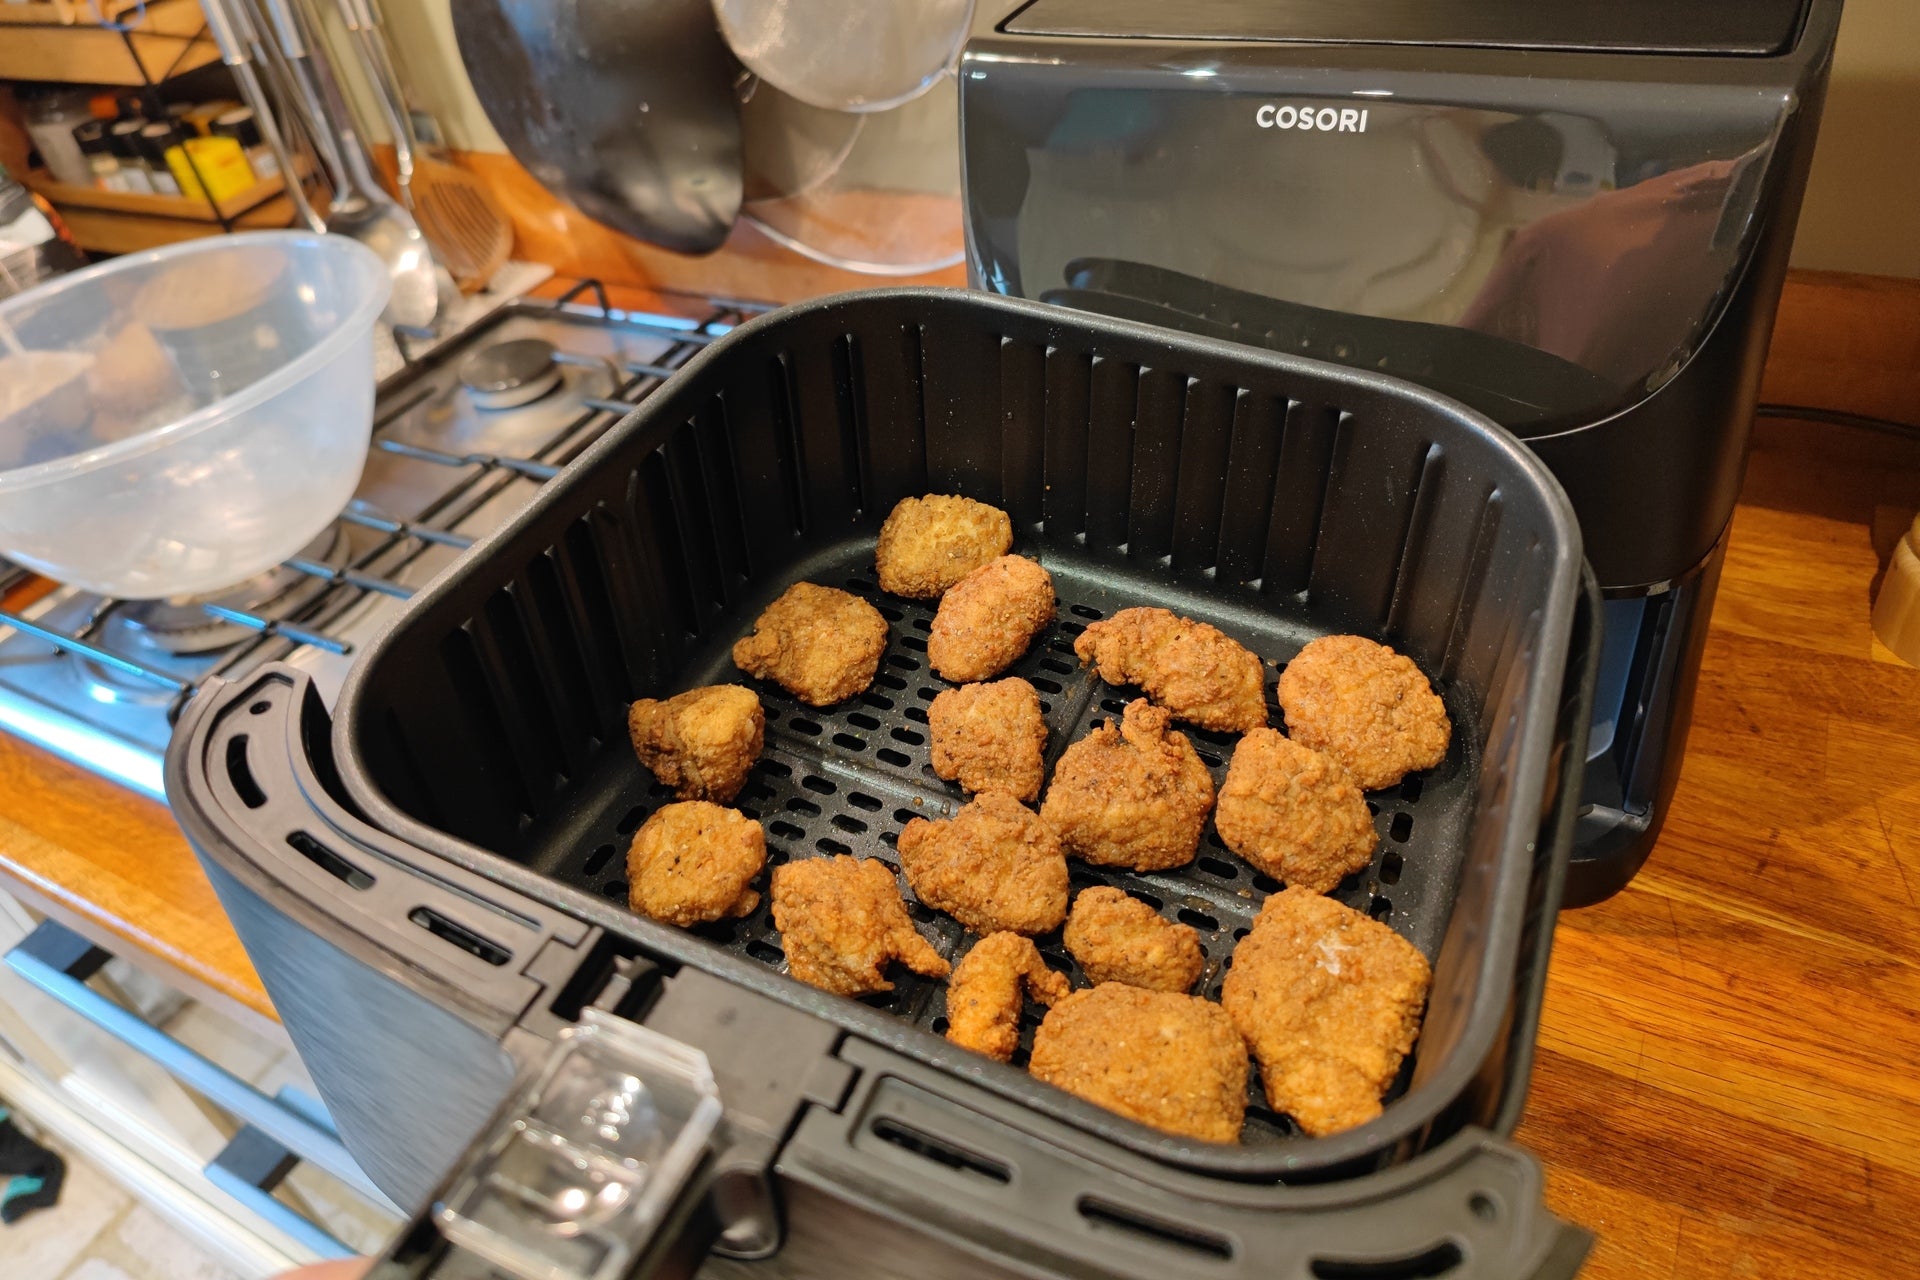 HTU an Air Fryer - placing food in basket